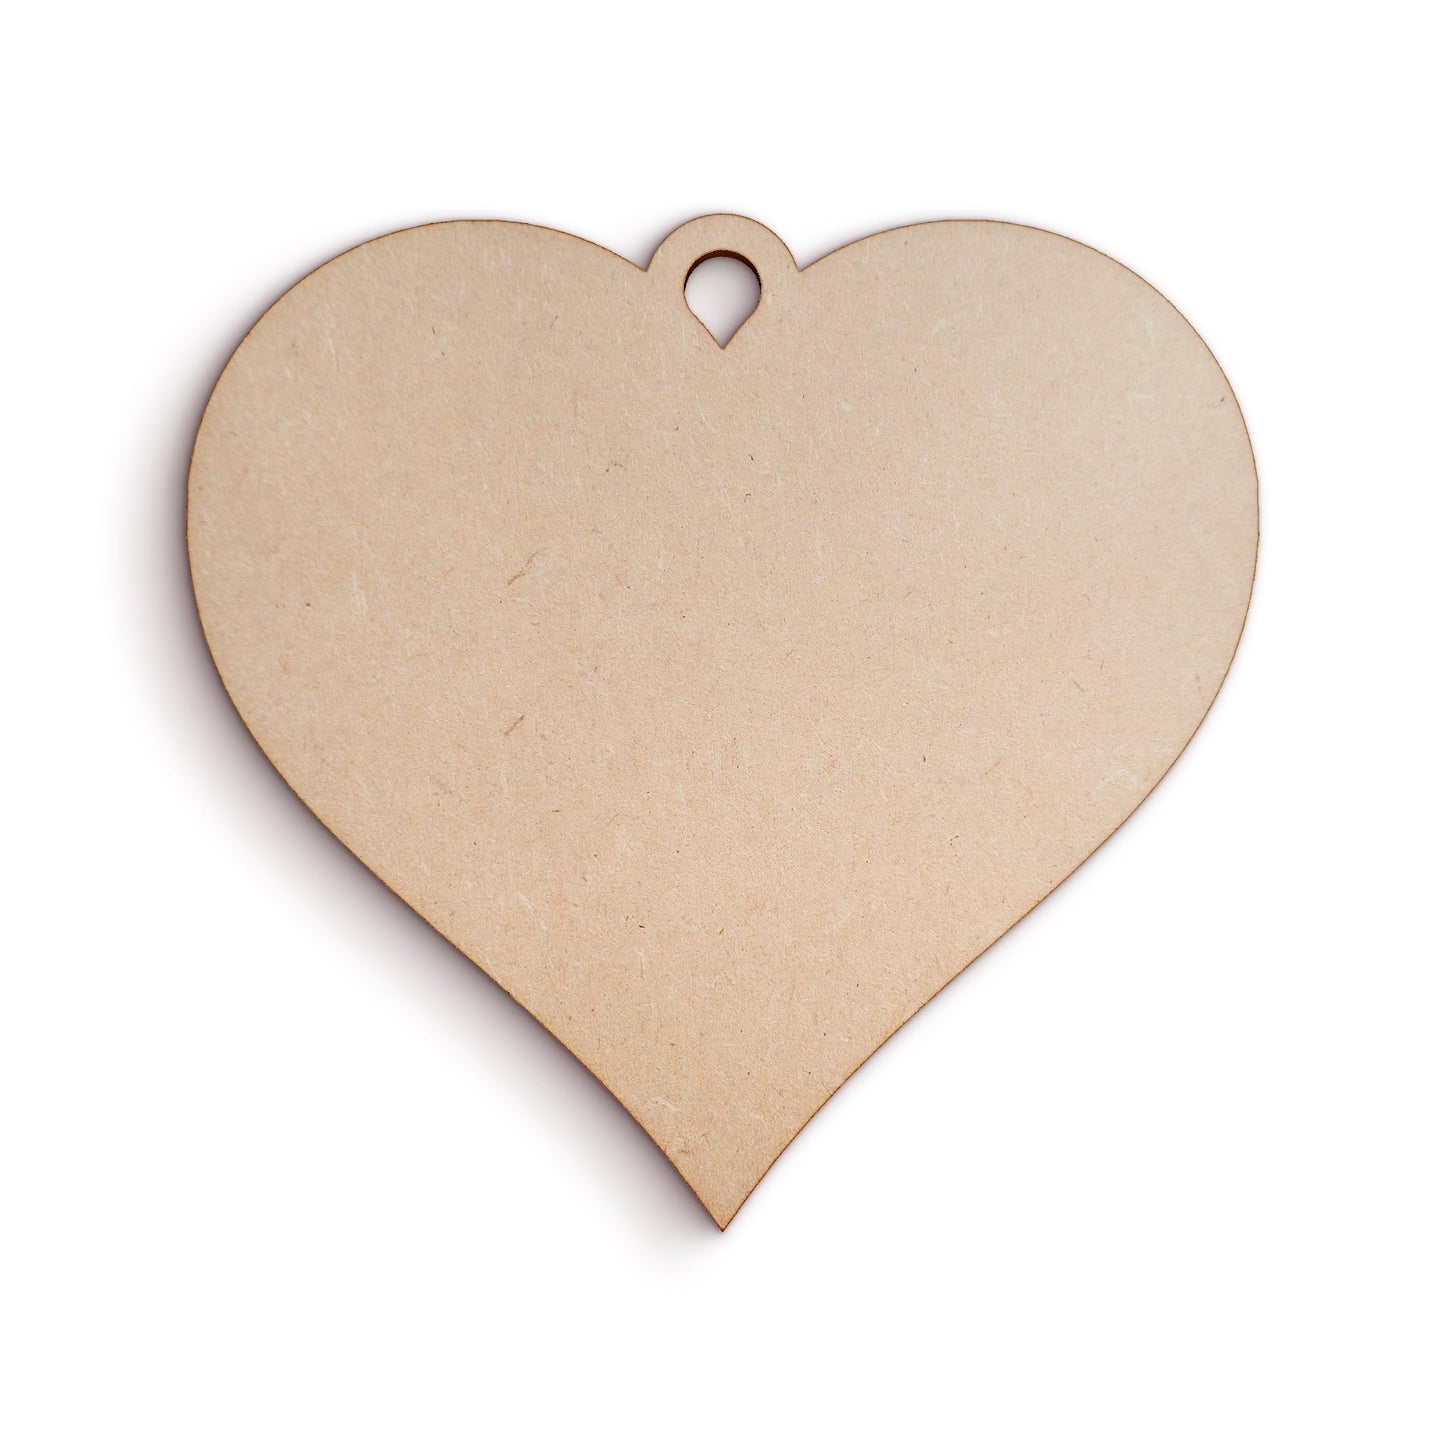 Heart wood craft shape SKU233773